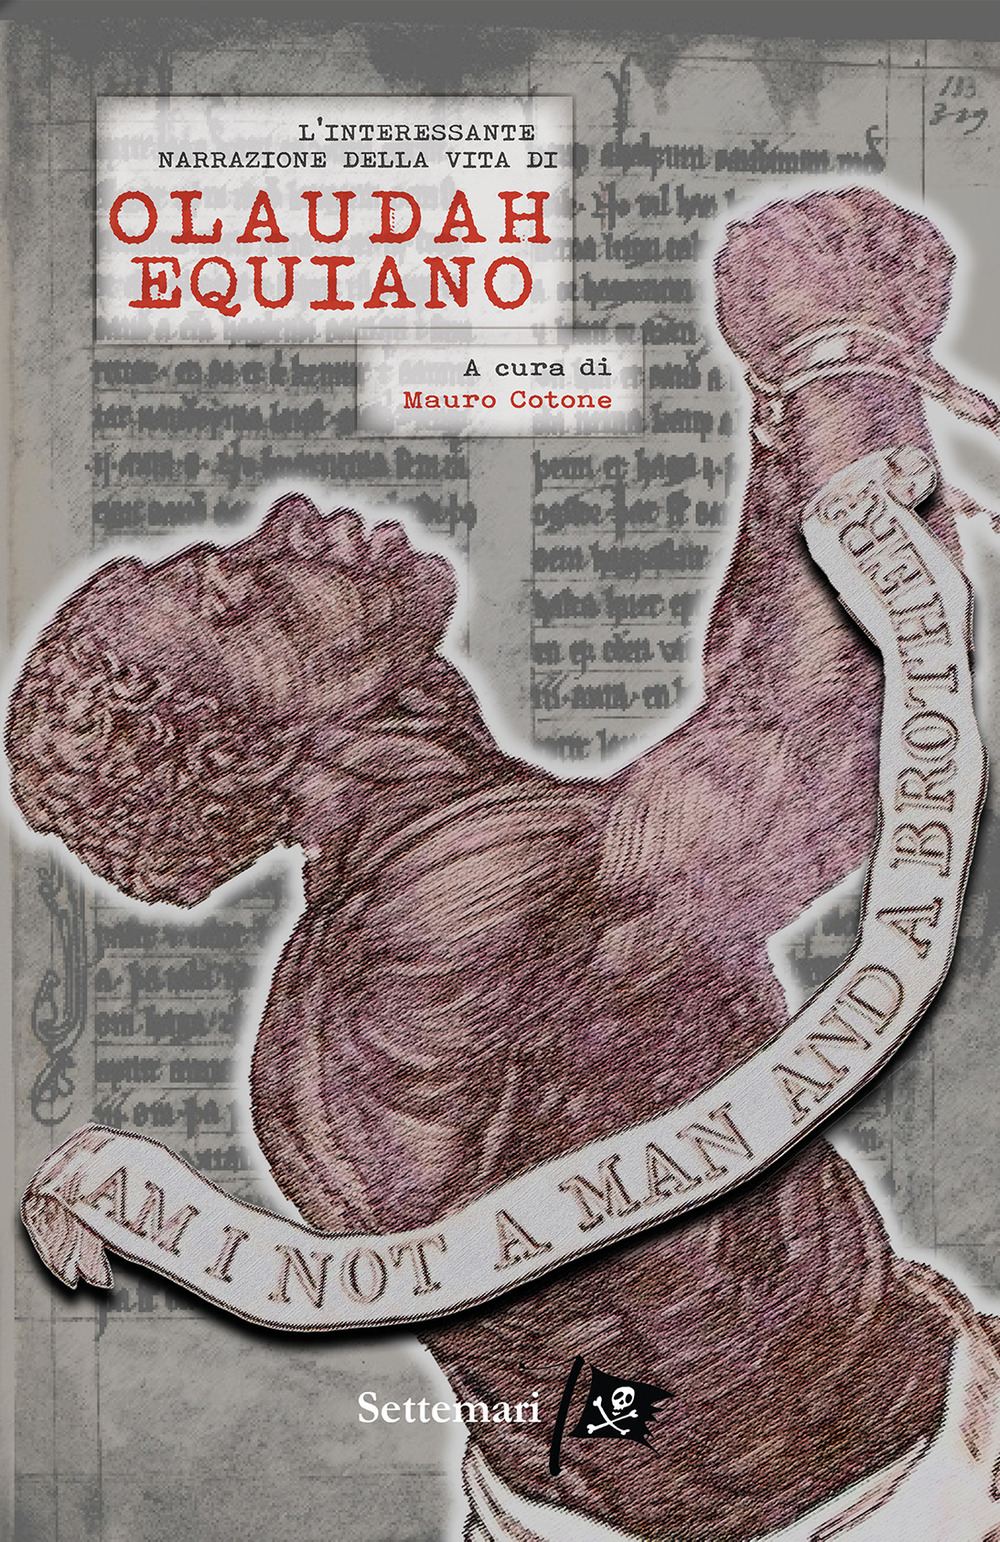 L'interessante narrazione della vita di Olaudah Equiano